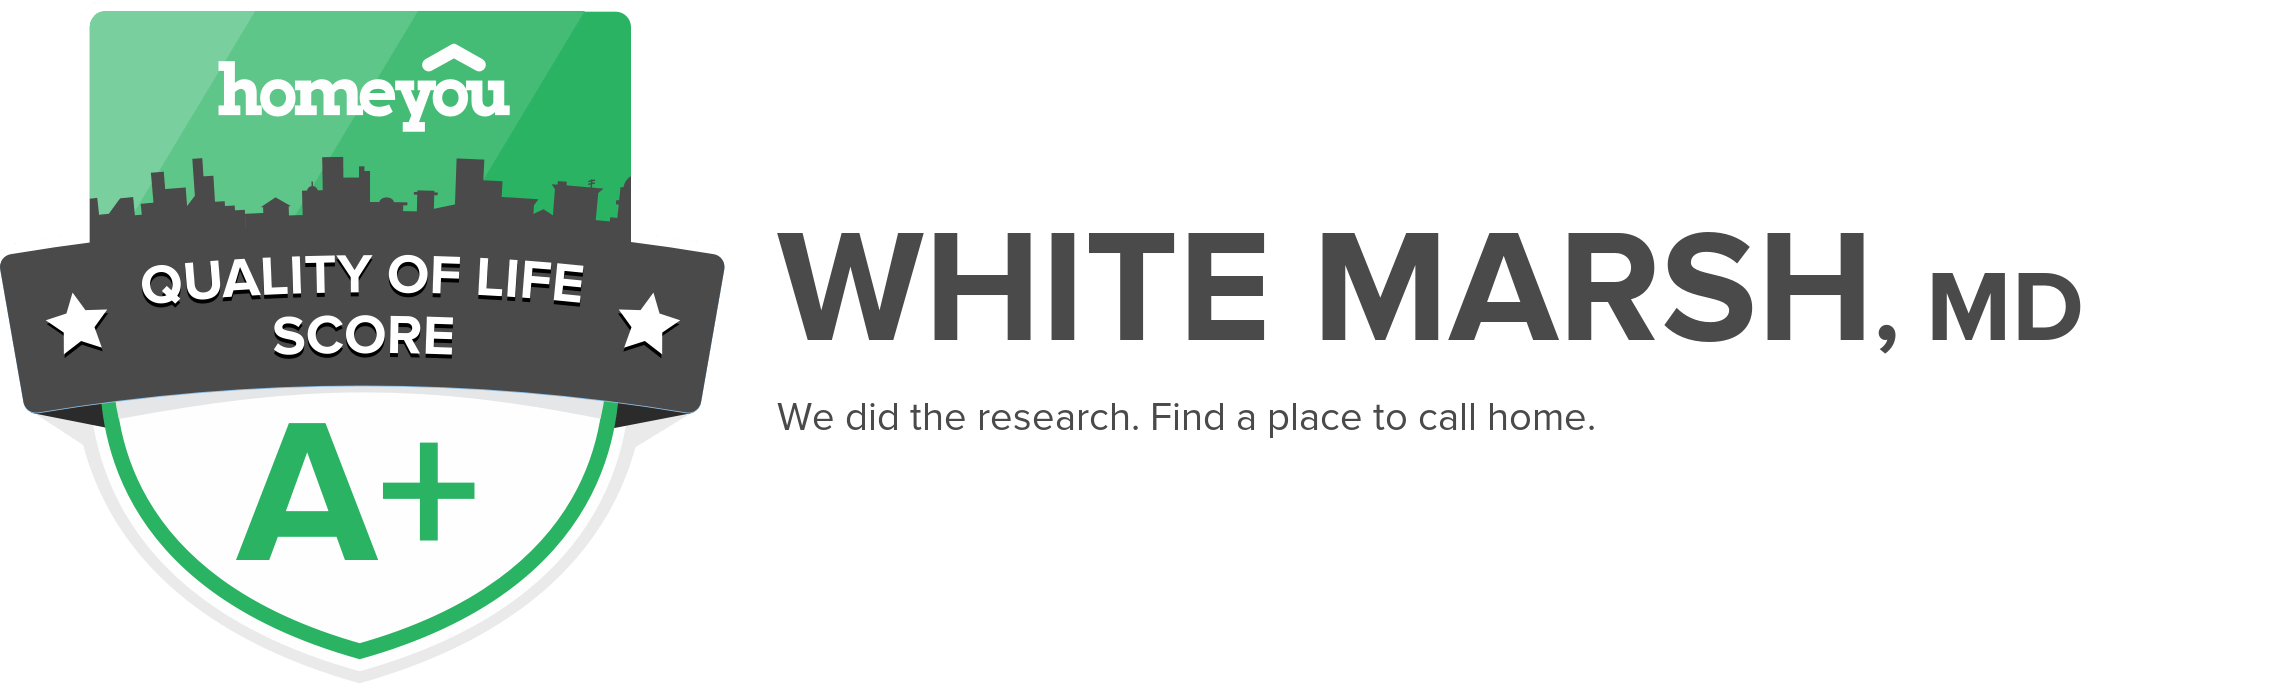 White Marsh, MD